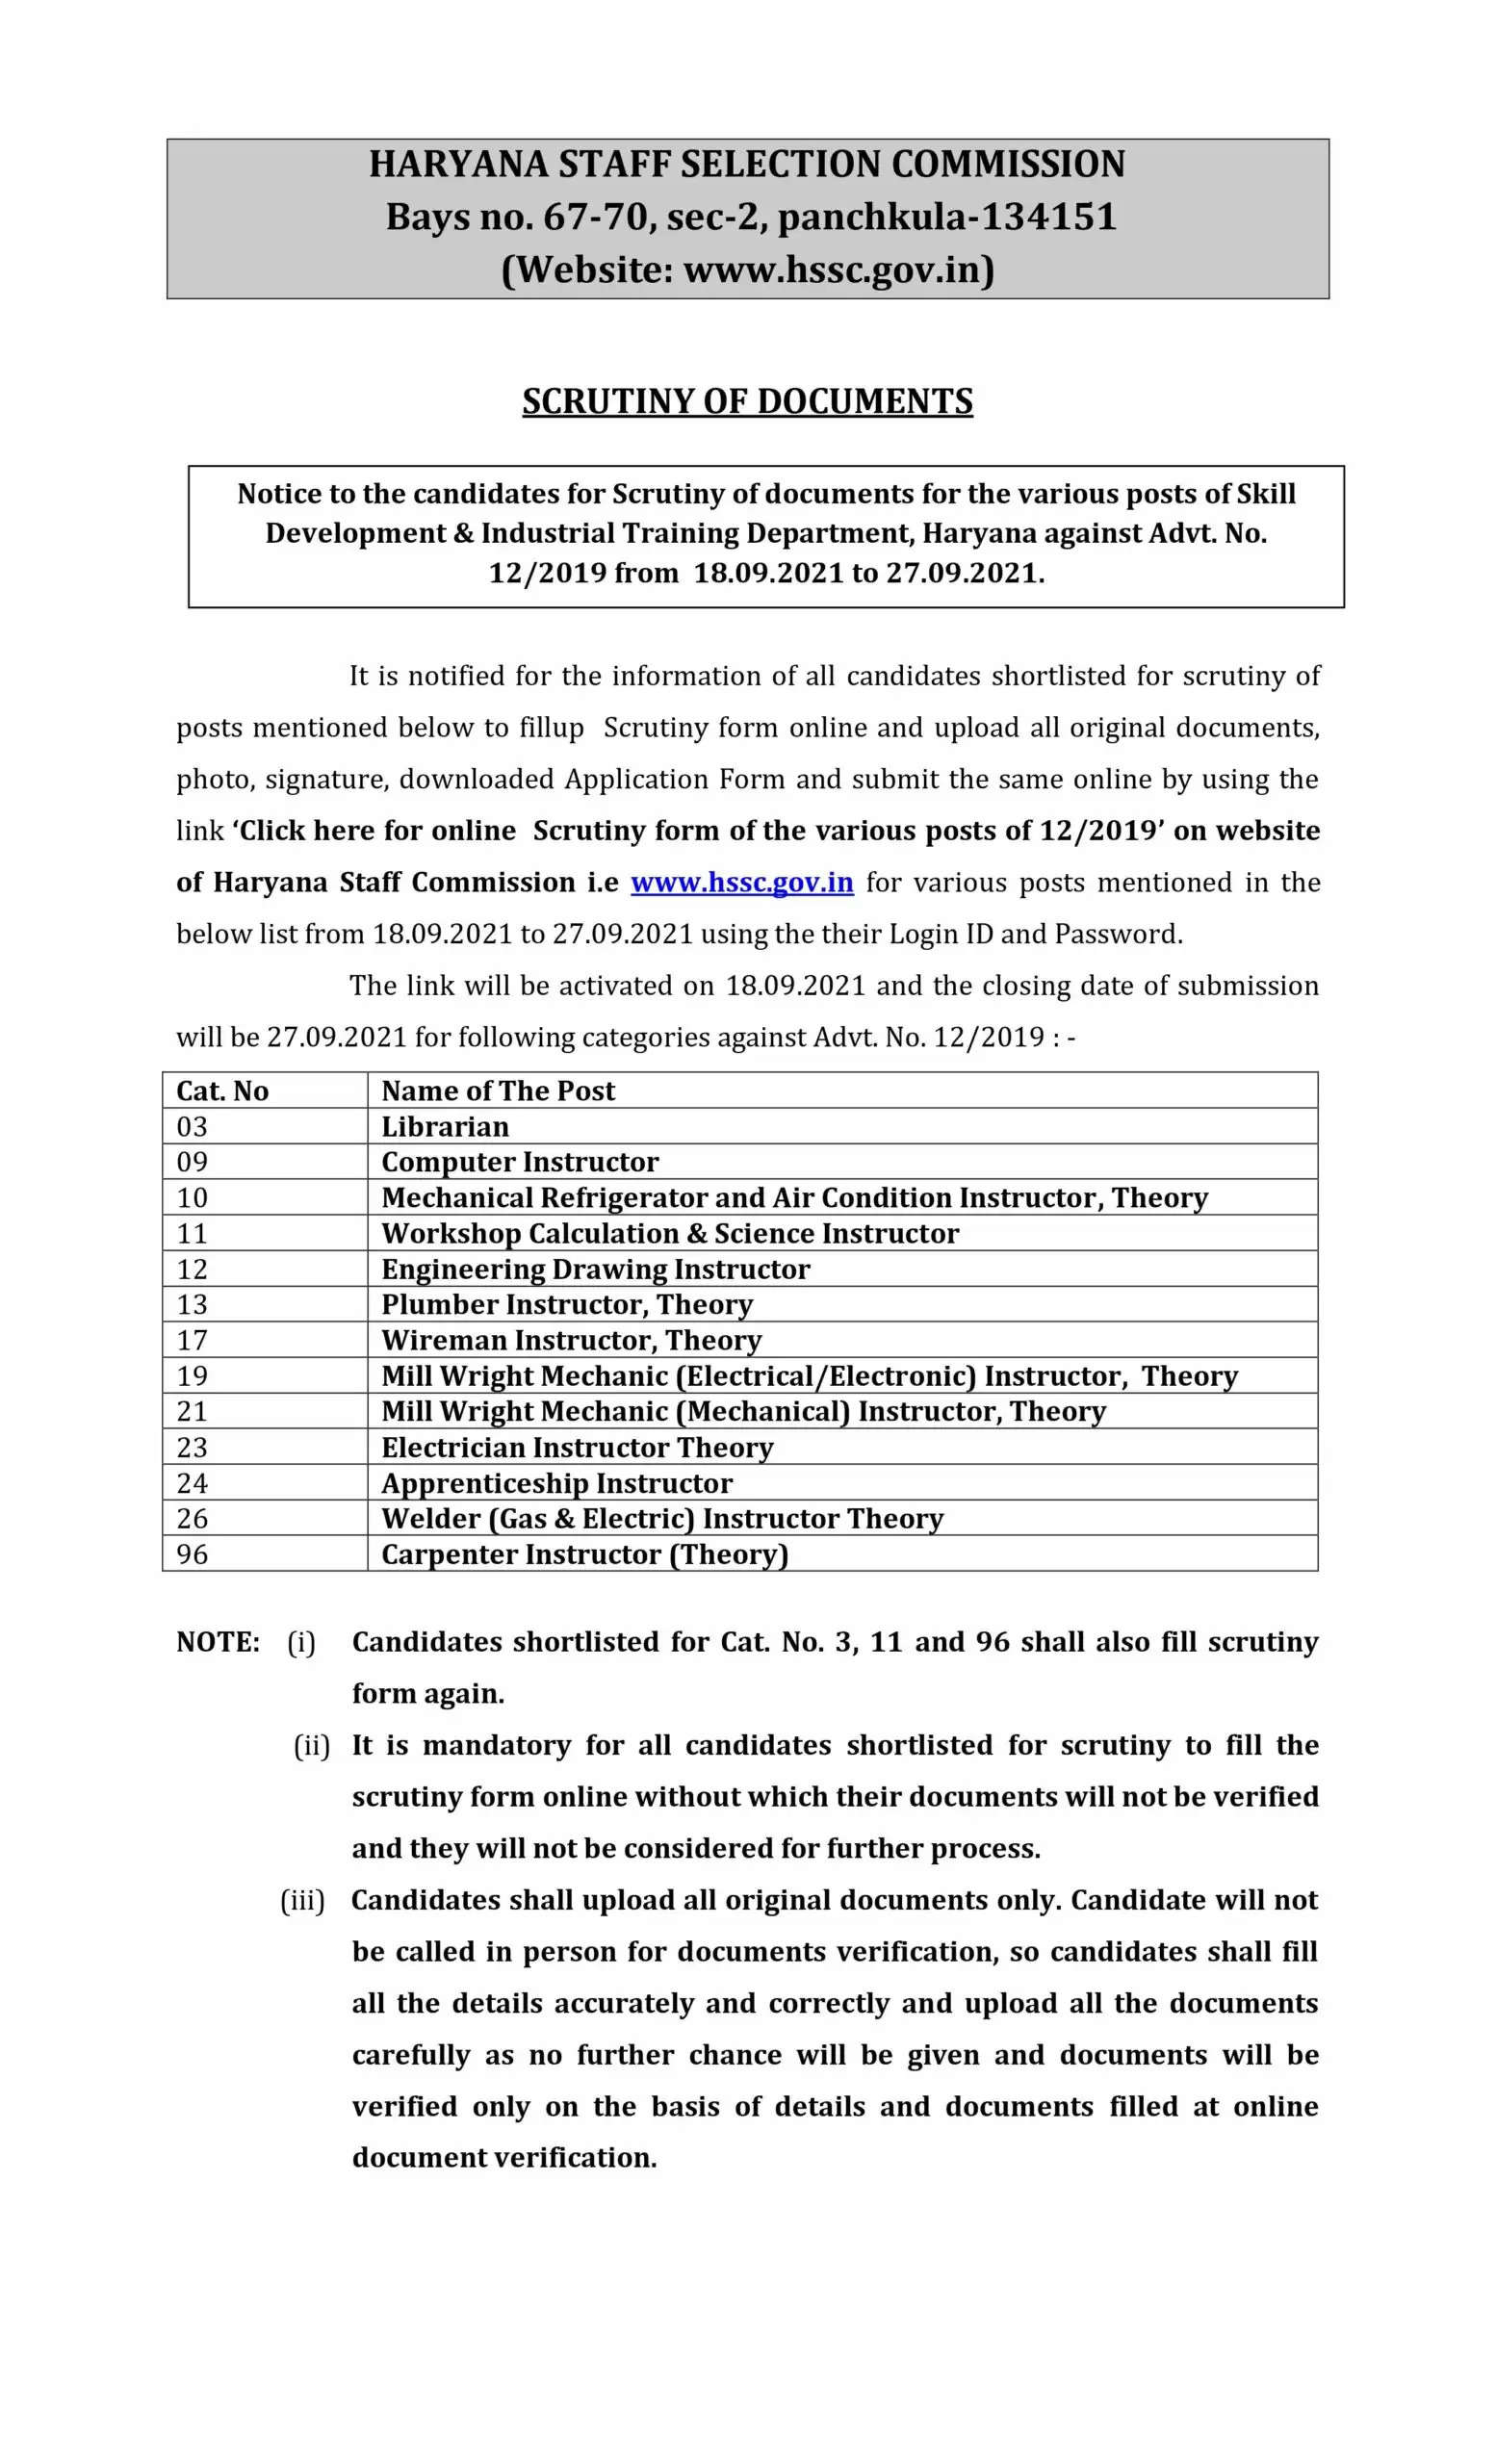 हरियाणा स्टाफ सिलेक्शन कमीशन ने कई पदों पर डॉक्यूमेंट जांच के लिए जारी किया नोटिस, यहां देखें